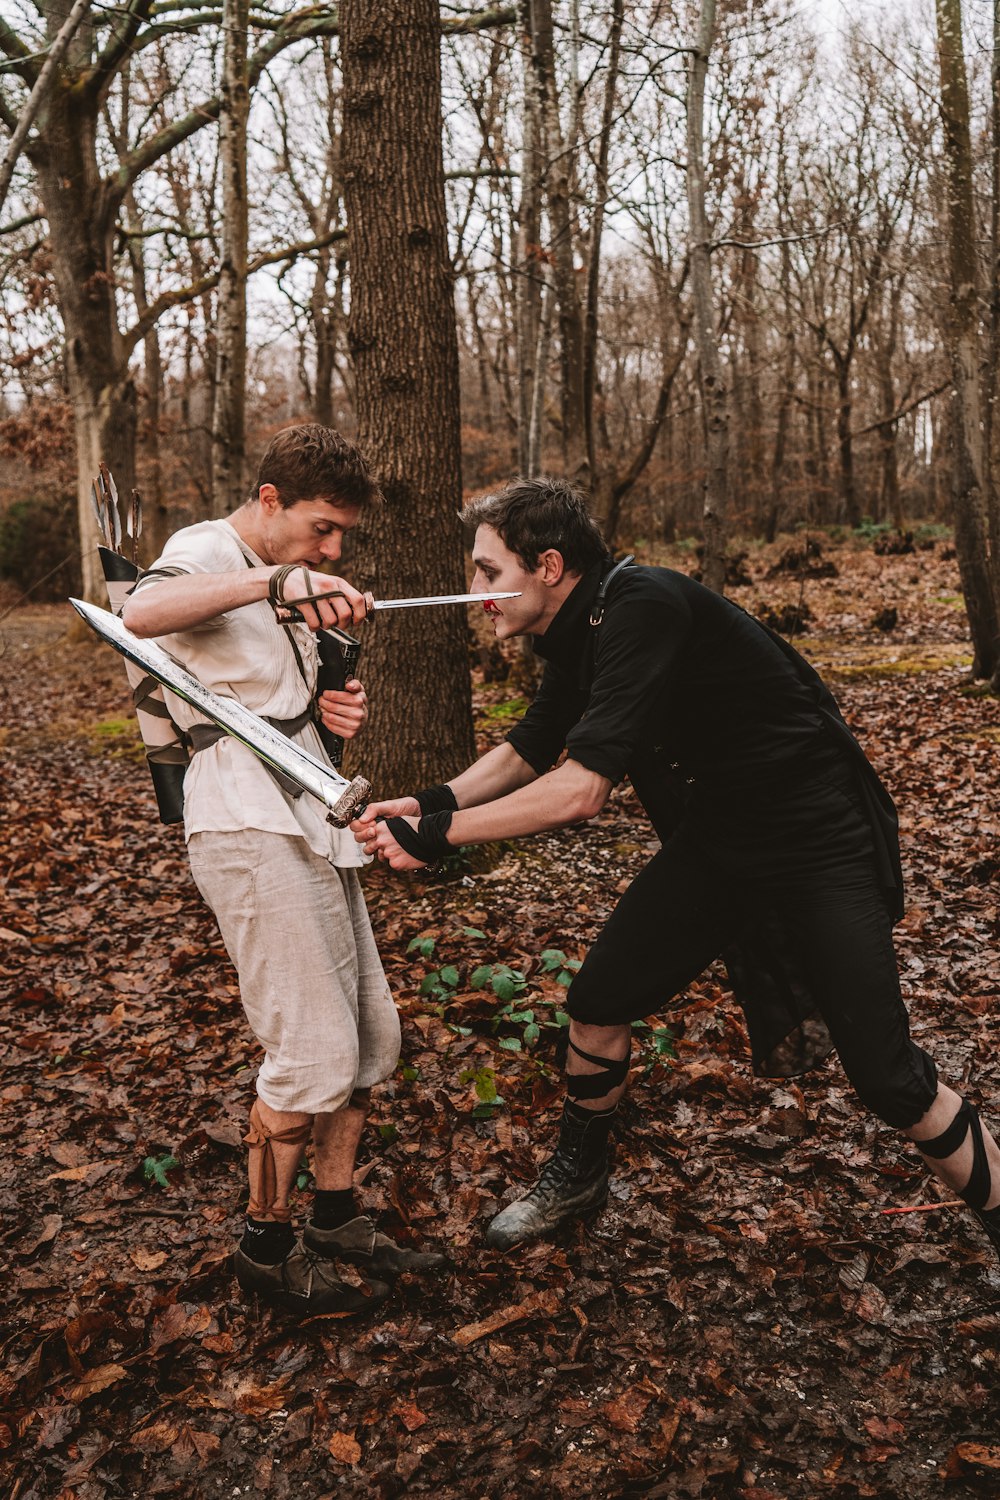 Zwei Männer im Wald mit Schwertern in der Hand